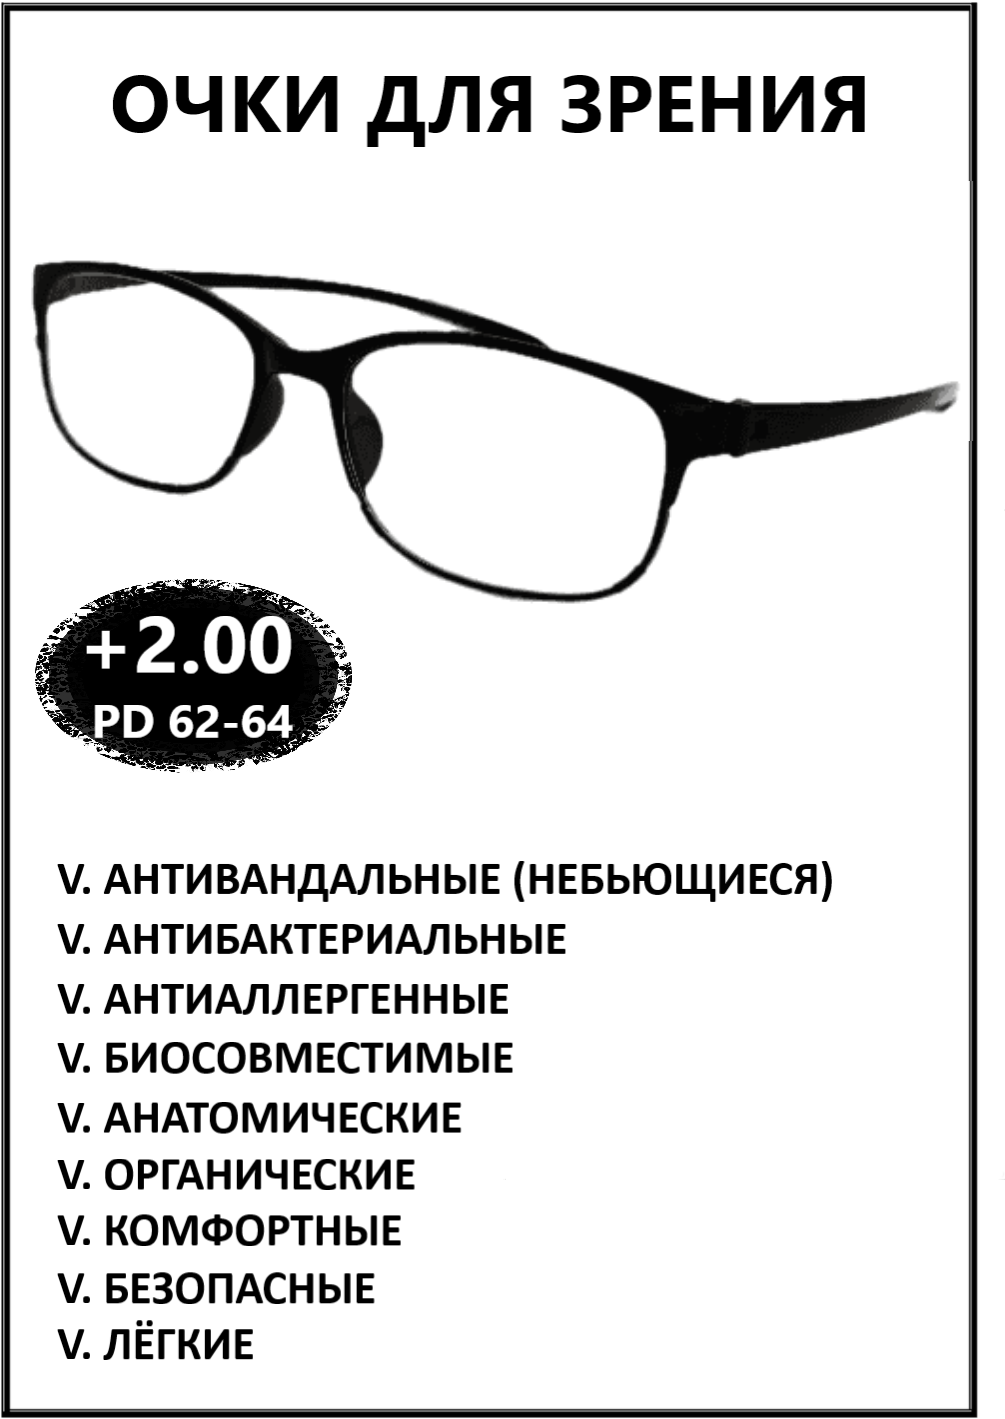 Очки готовые пластиковые с диоптриями +2.00 корригирующие зрения для чтения, купить оптику плюс с диоптриями и прозрачными линзами мужские, женские.